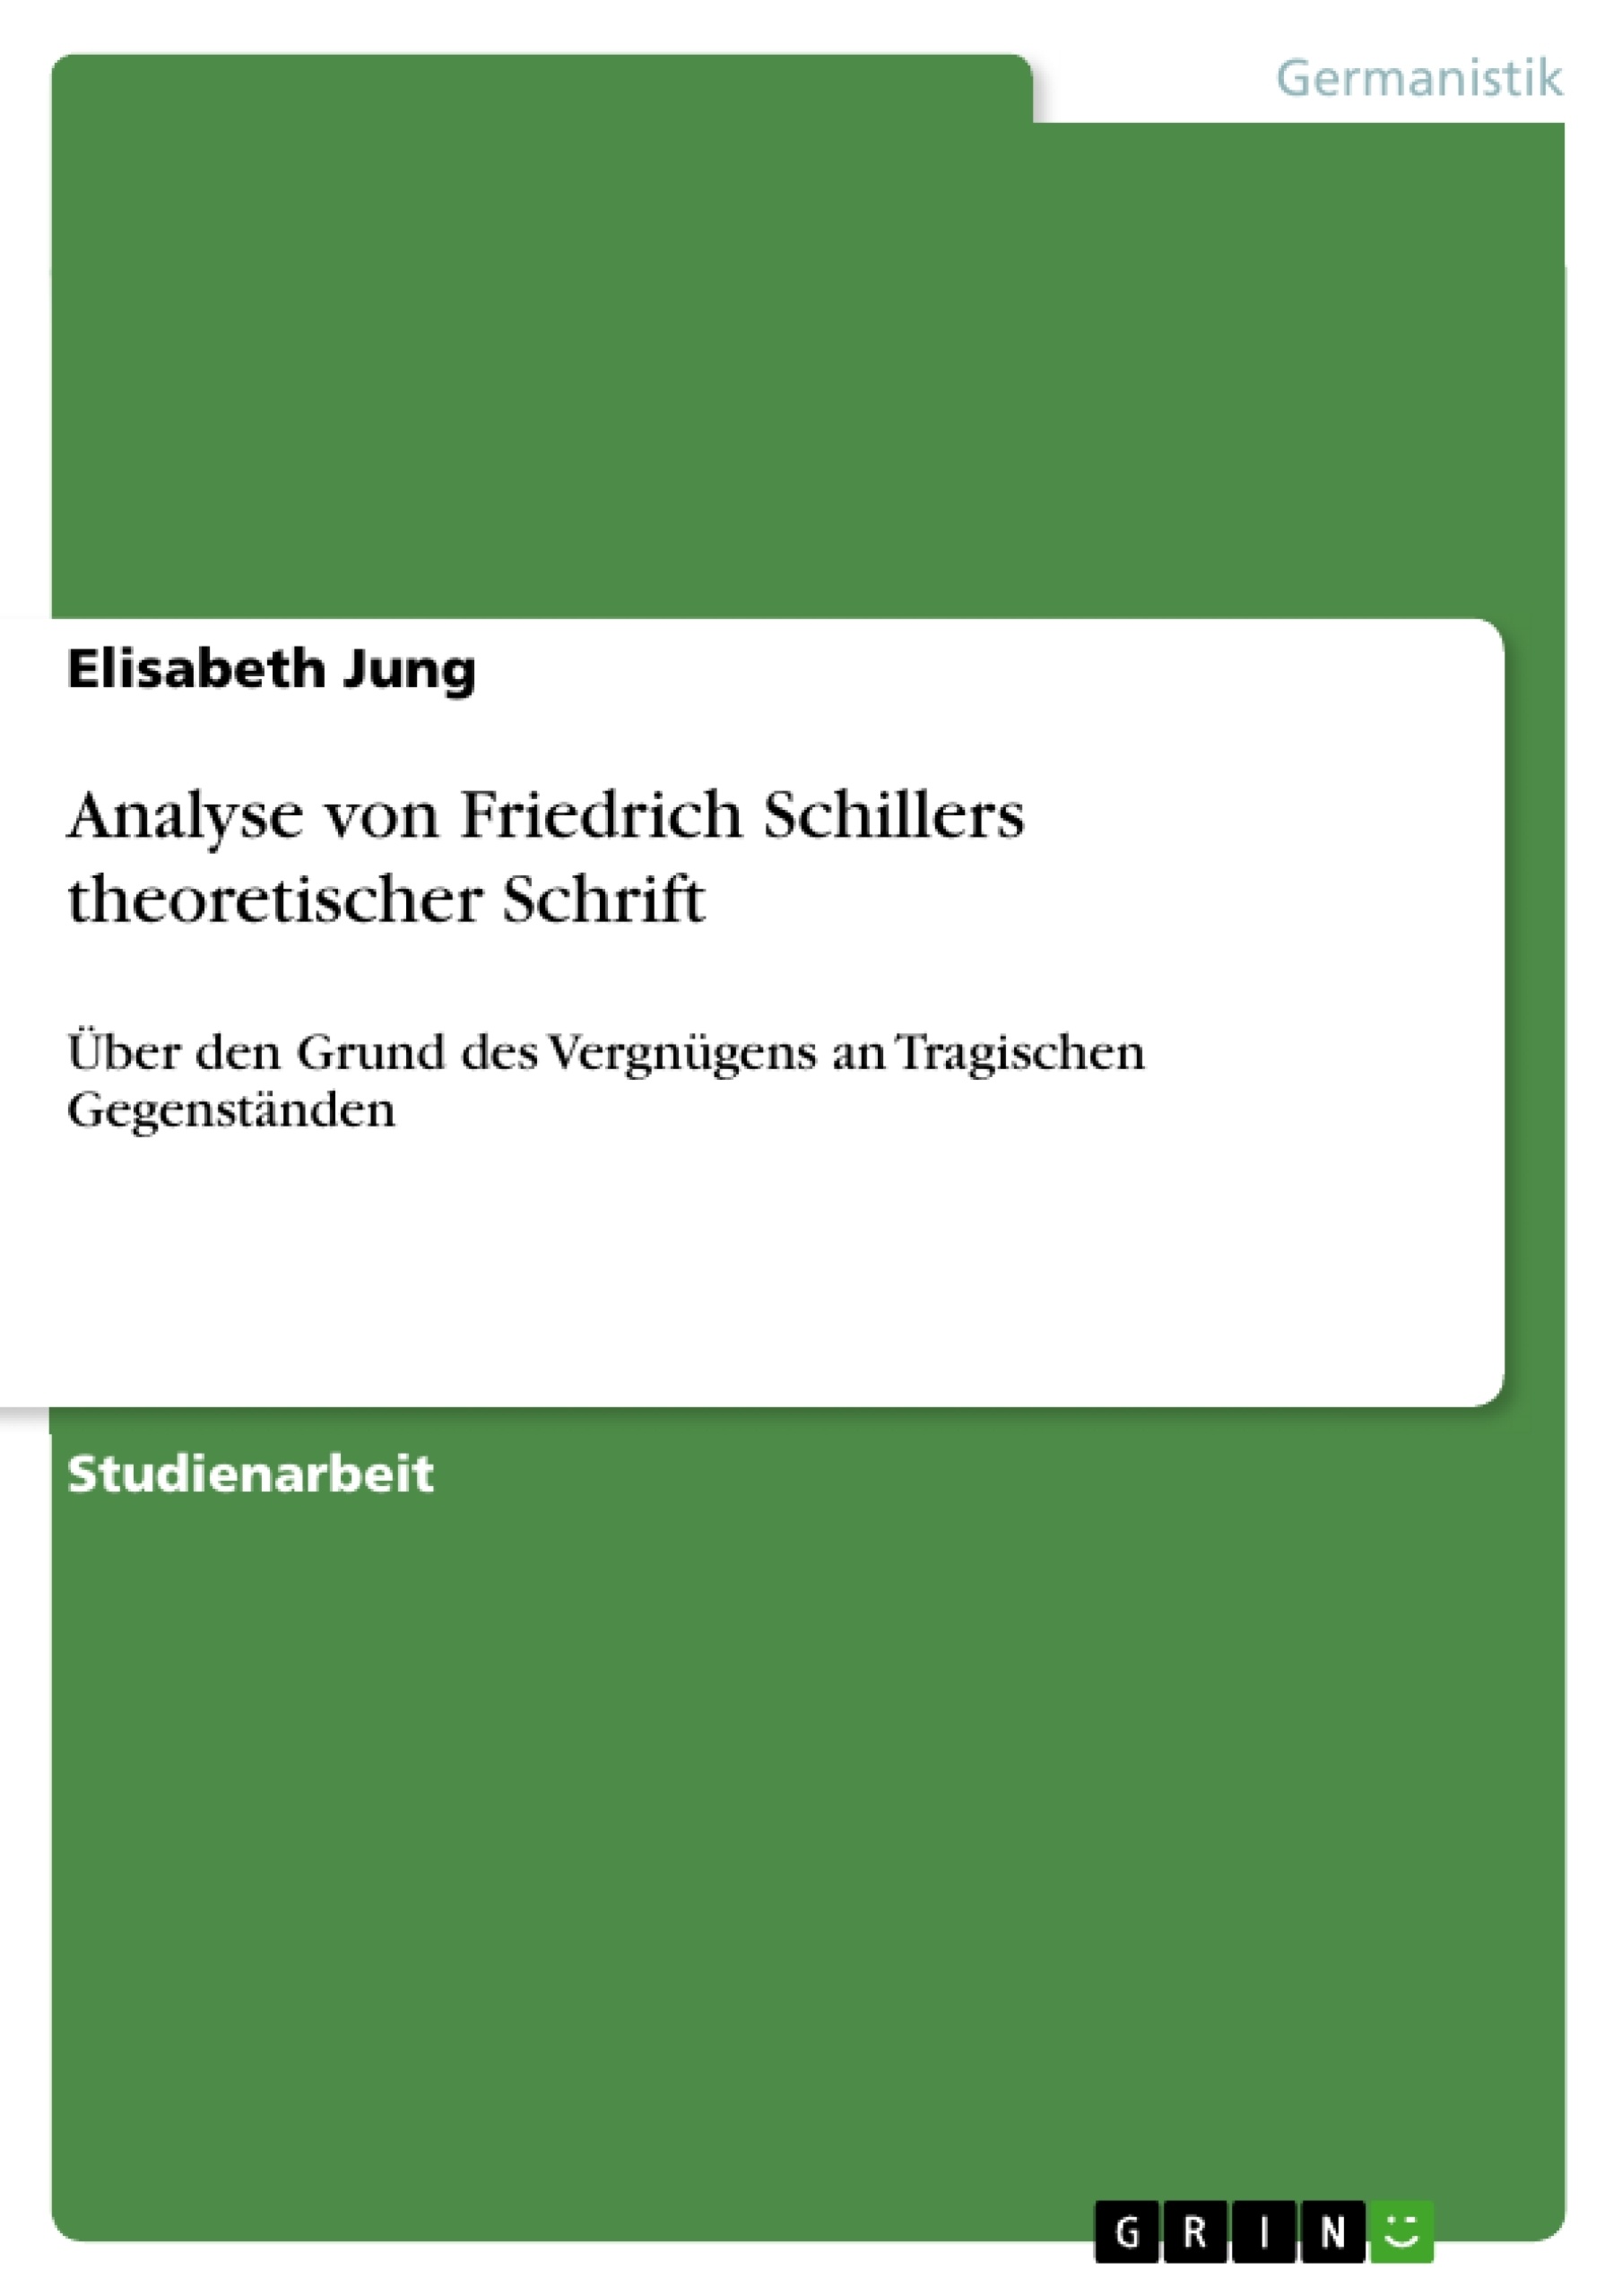 Título: Analyse von Friedrich Schillers theoretischer Schrift 